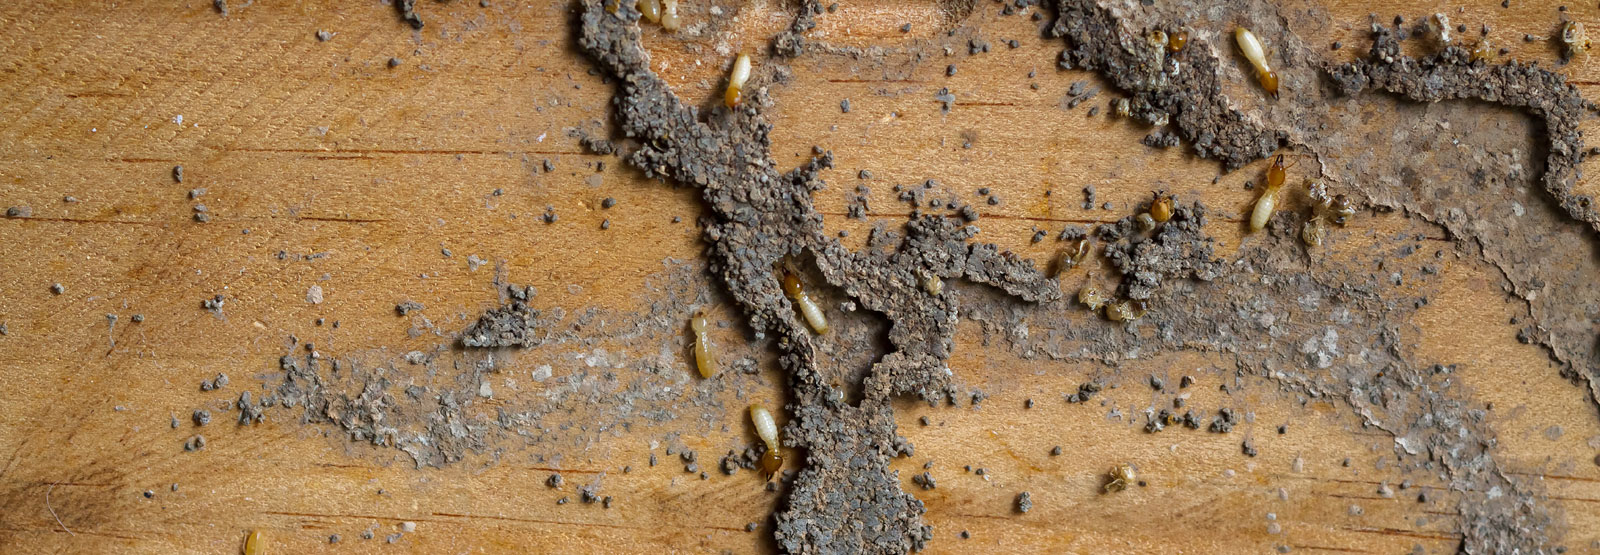 termites exterminator